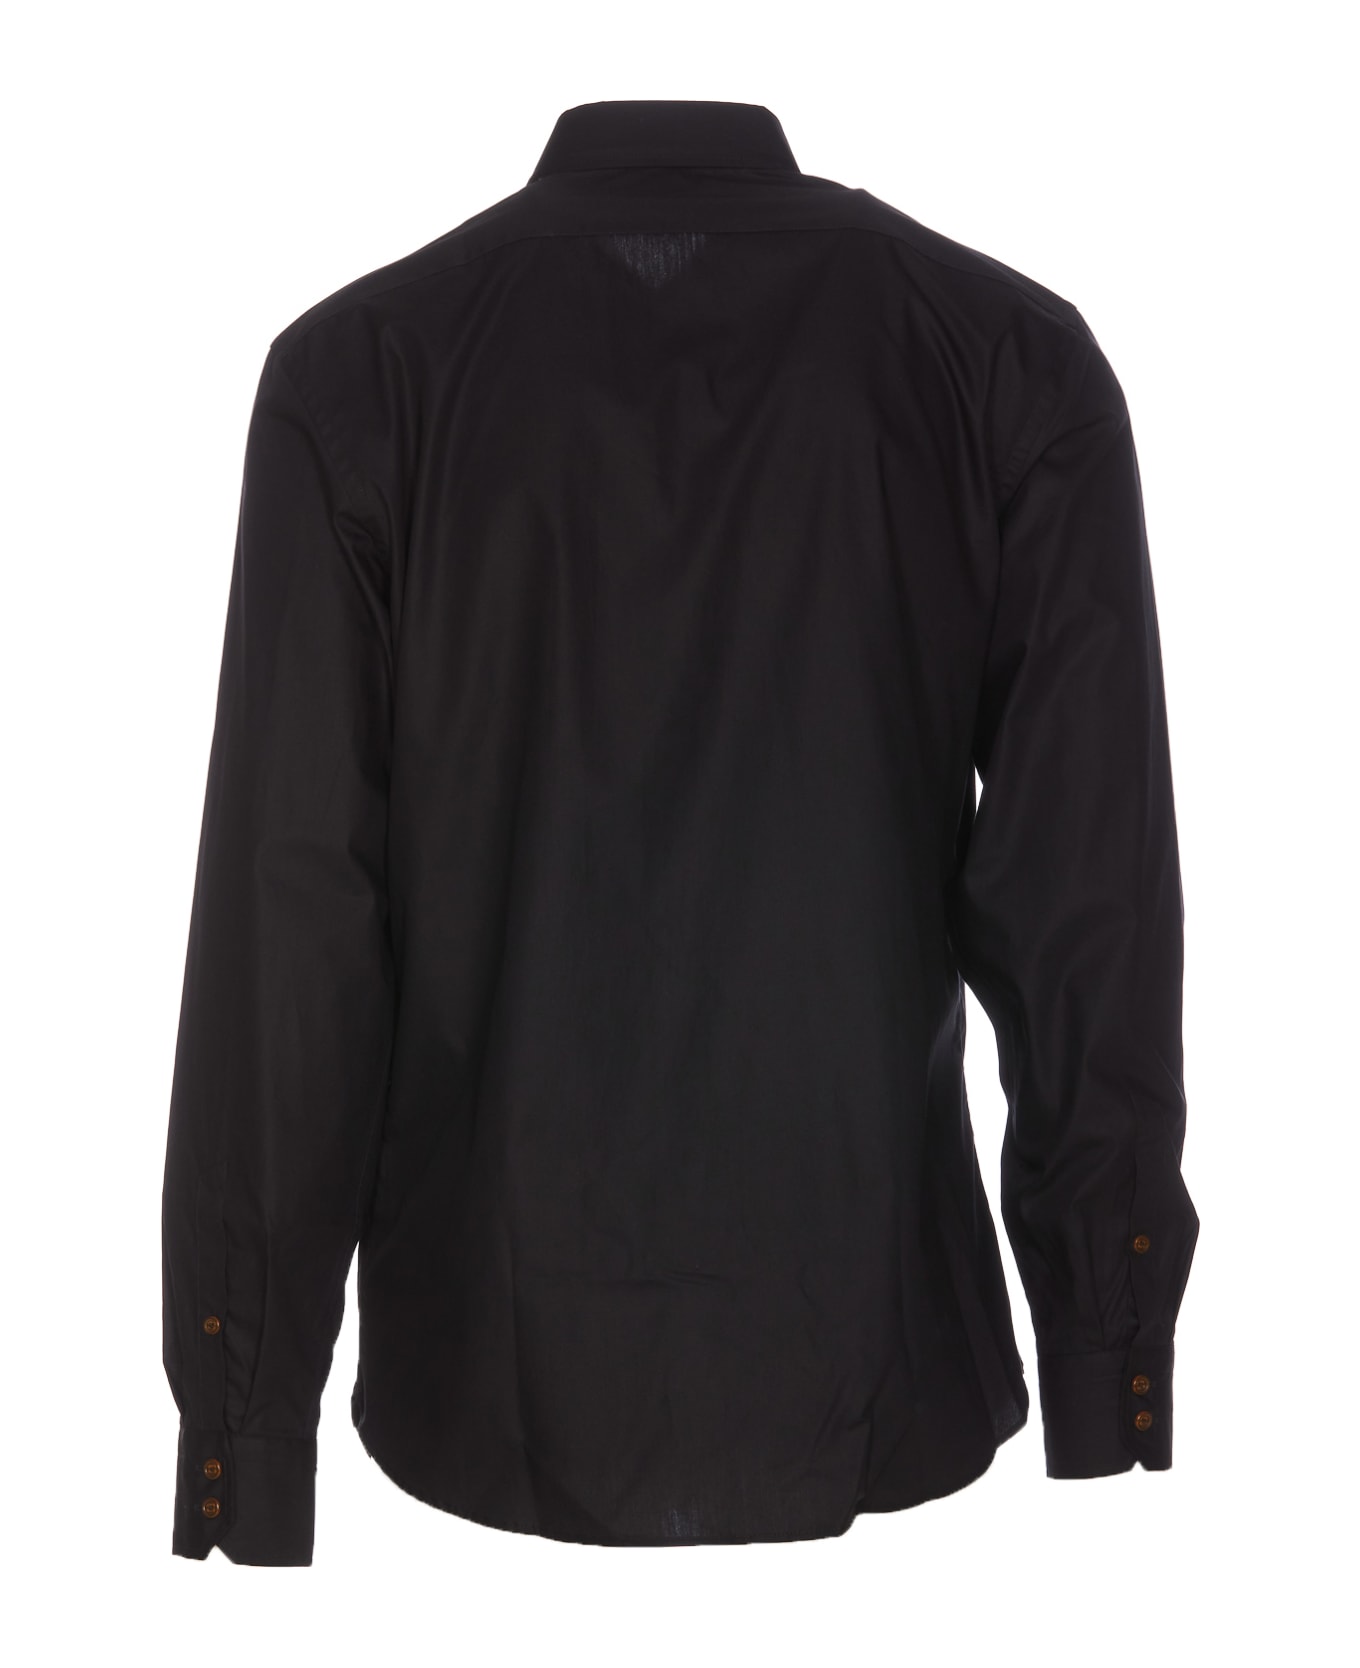 Vivienne Westwood Ghost Shirt - Black